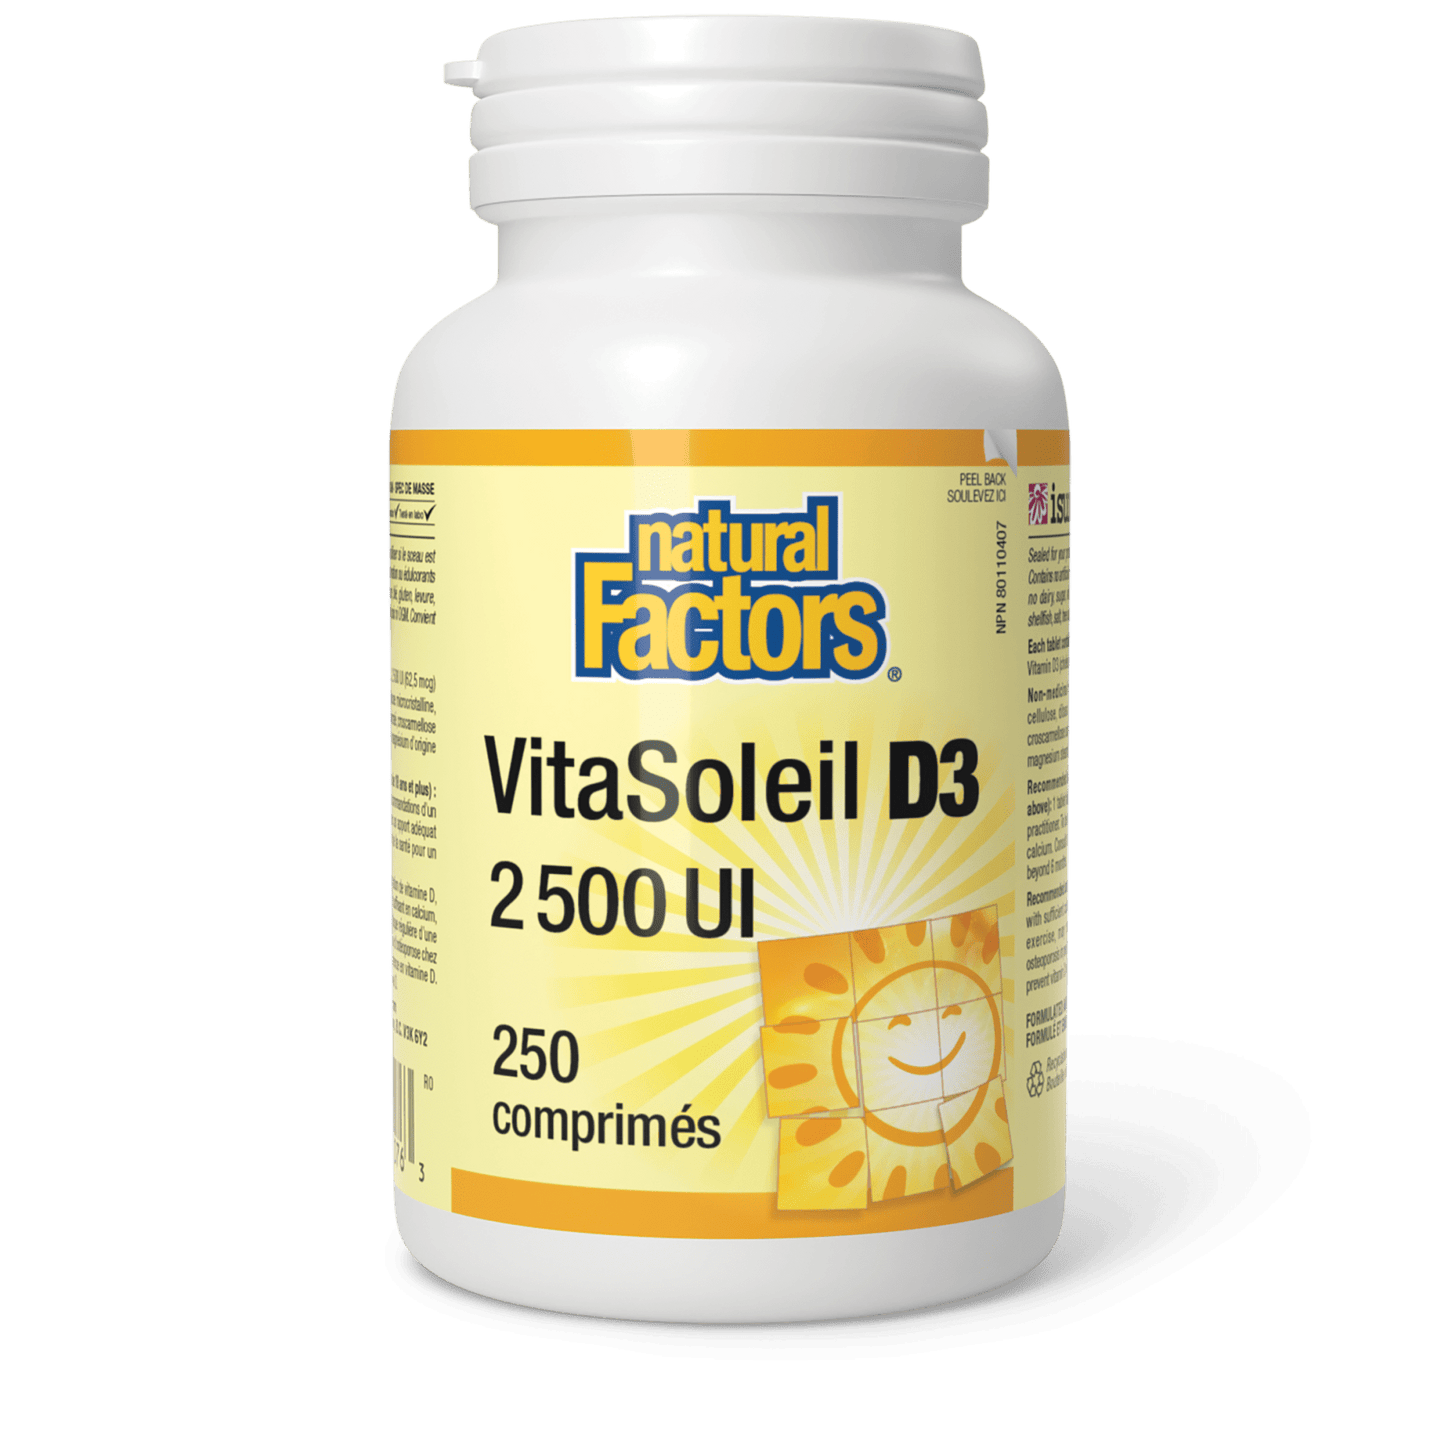 VitaSoleil D3 comprimés 2 500 UI, Natural Factors|v|image|1076